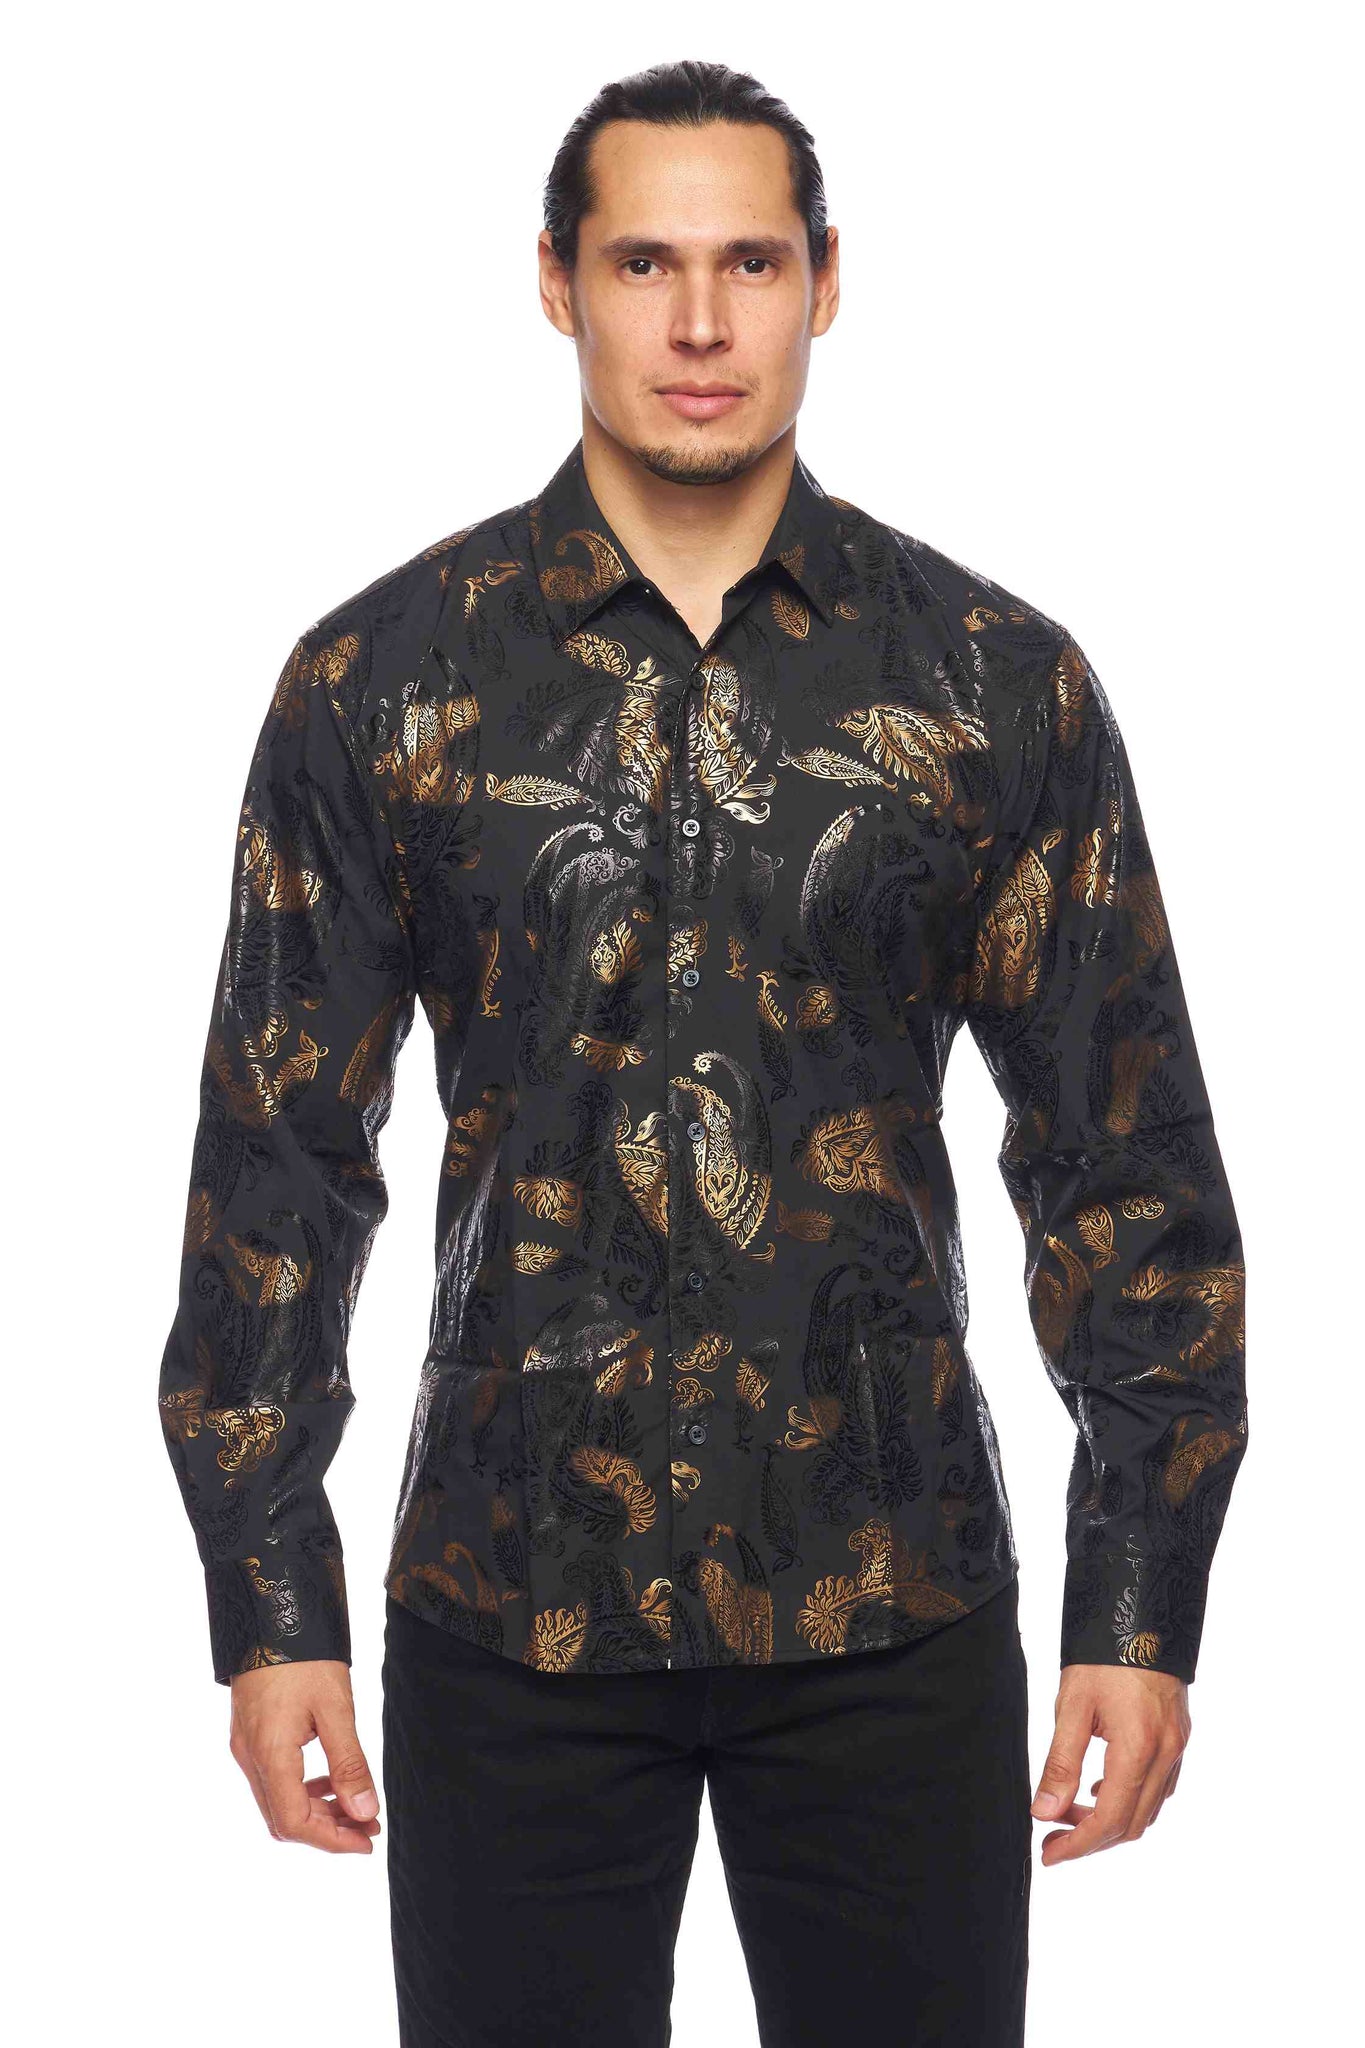 Mens Luxury Brand Printed Silk Like Shirts-HLS2002L-527